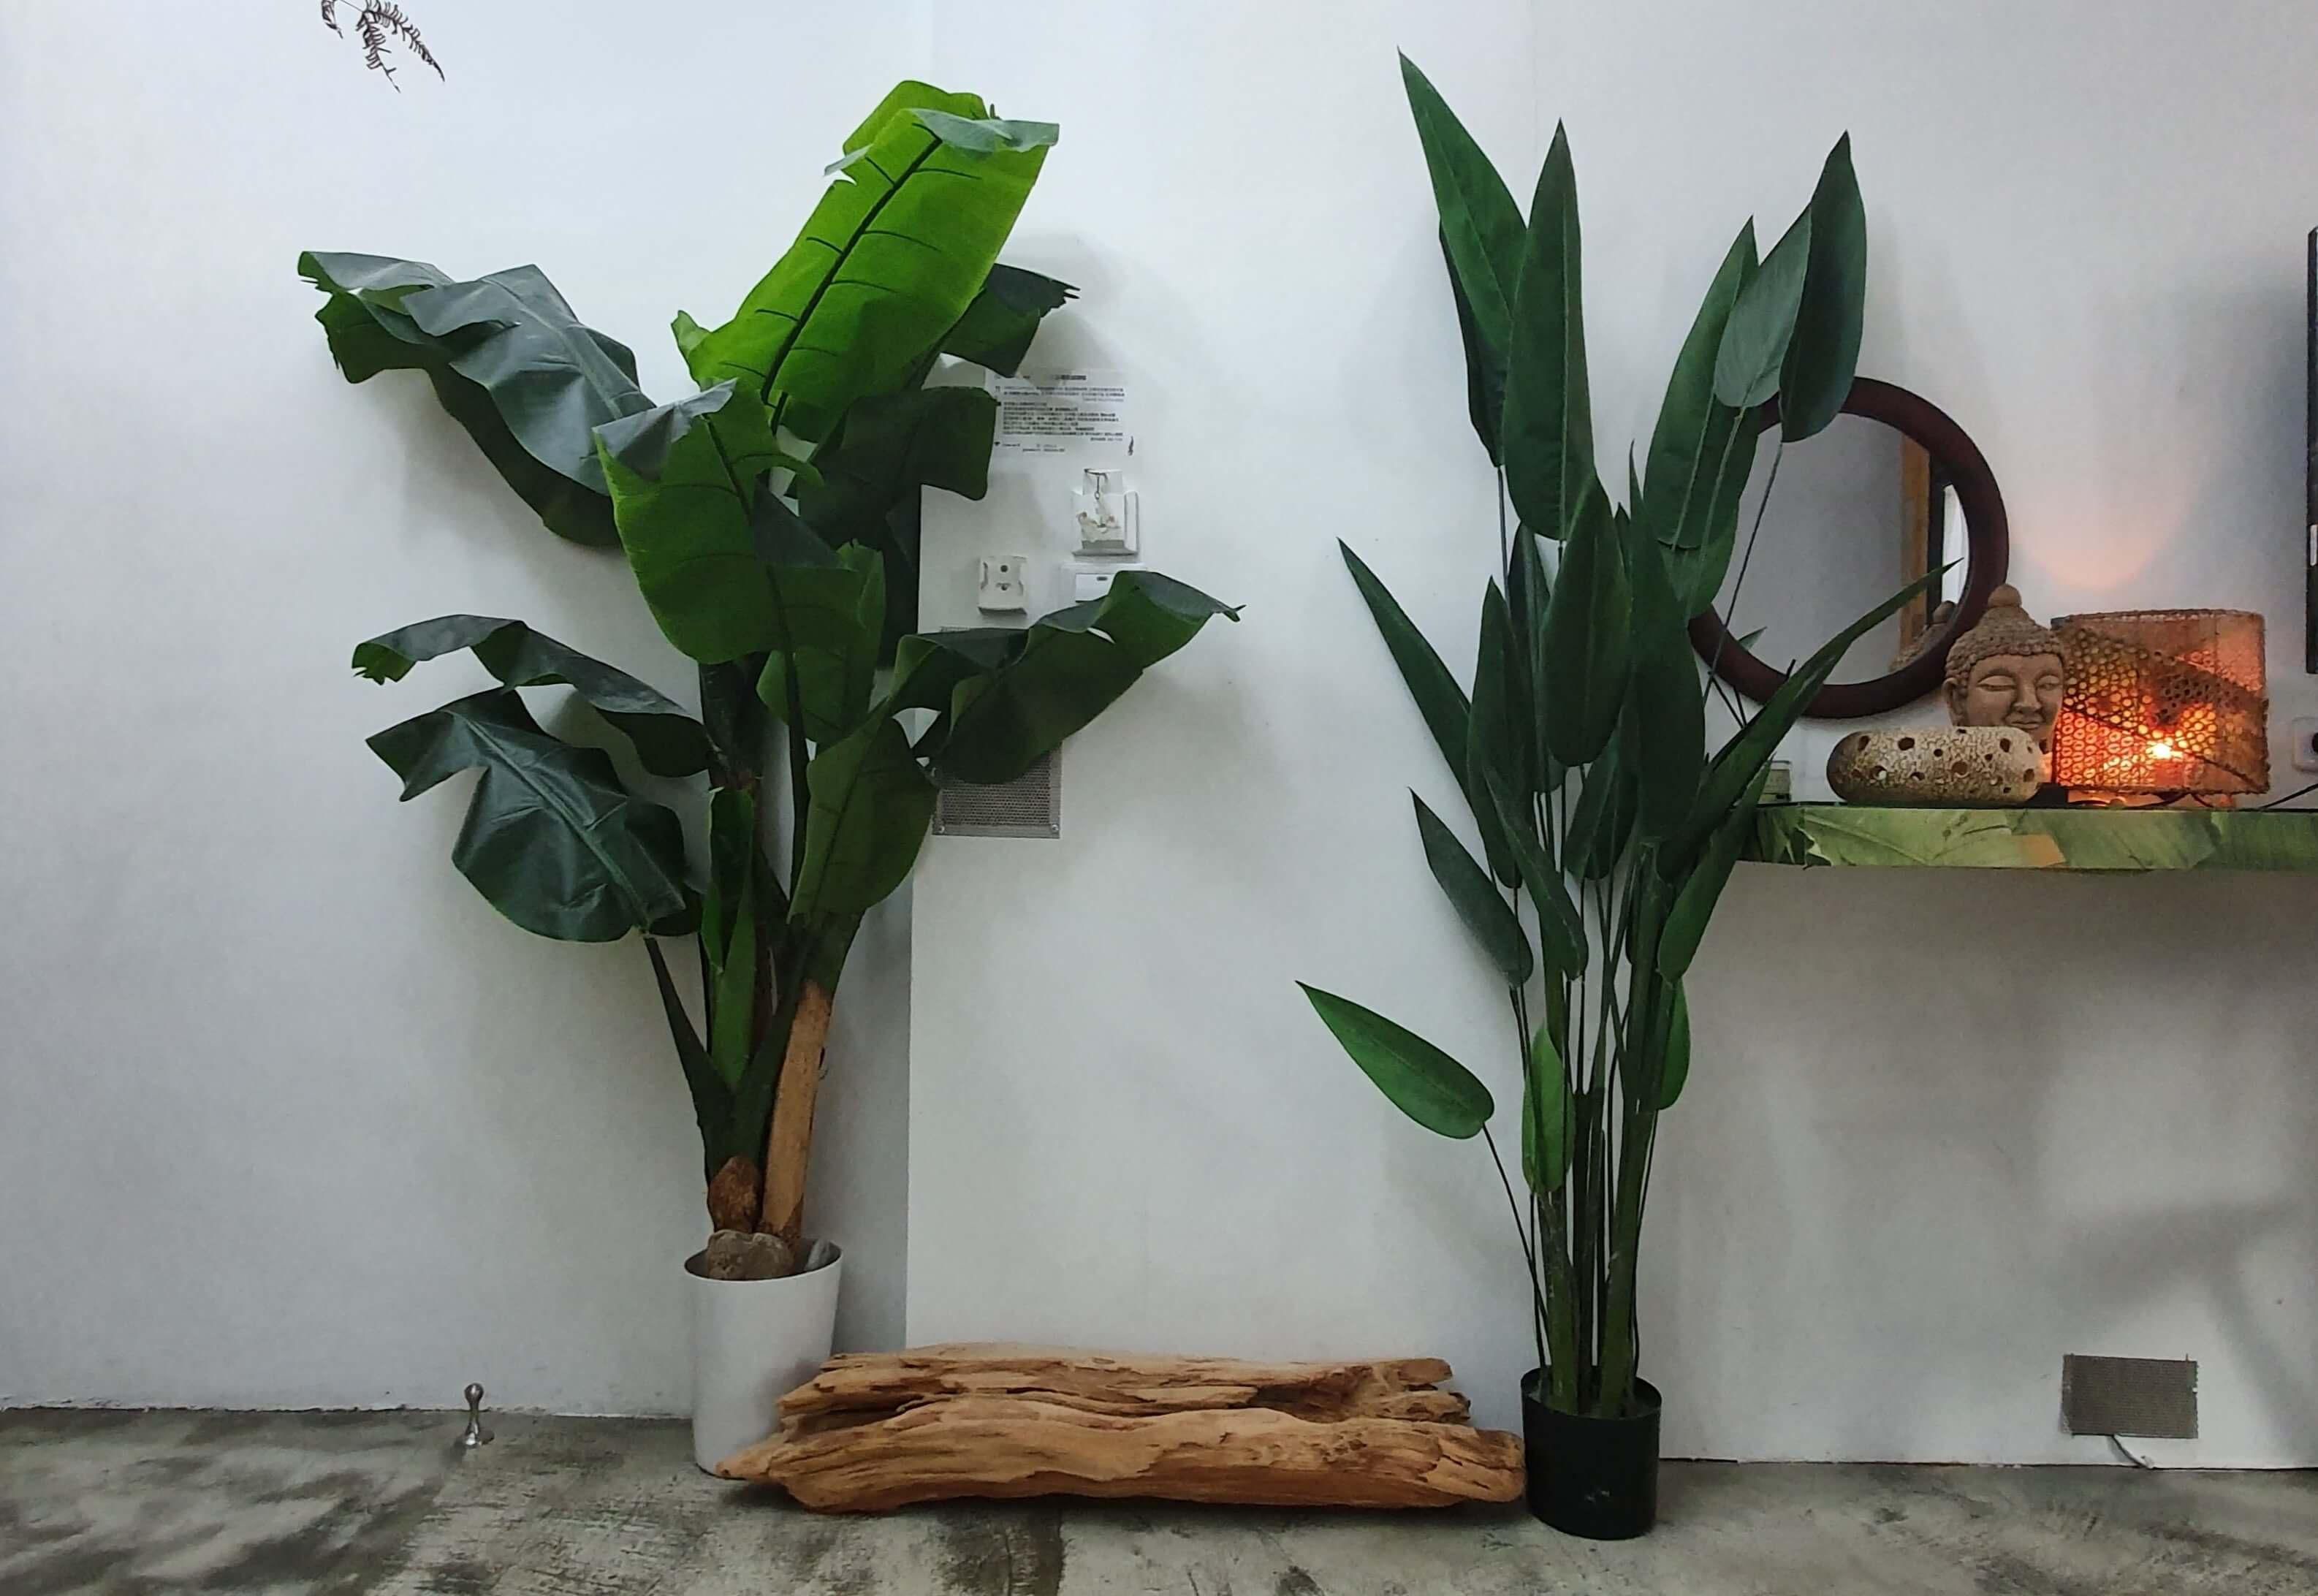 整間房用大量綠色植栽跟木頭擺設,還有泰國.尼泊爾.峇厘島風格的藝術品點綴